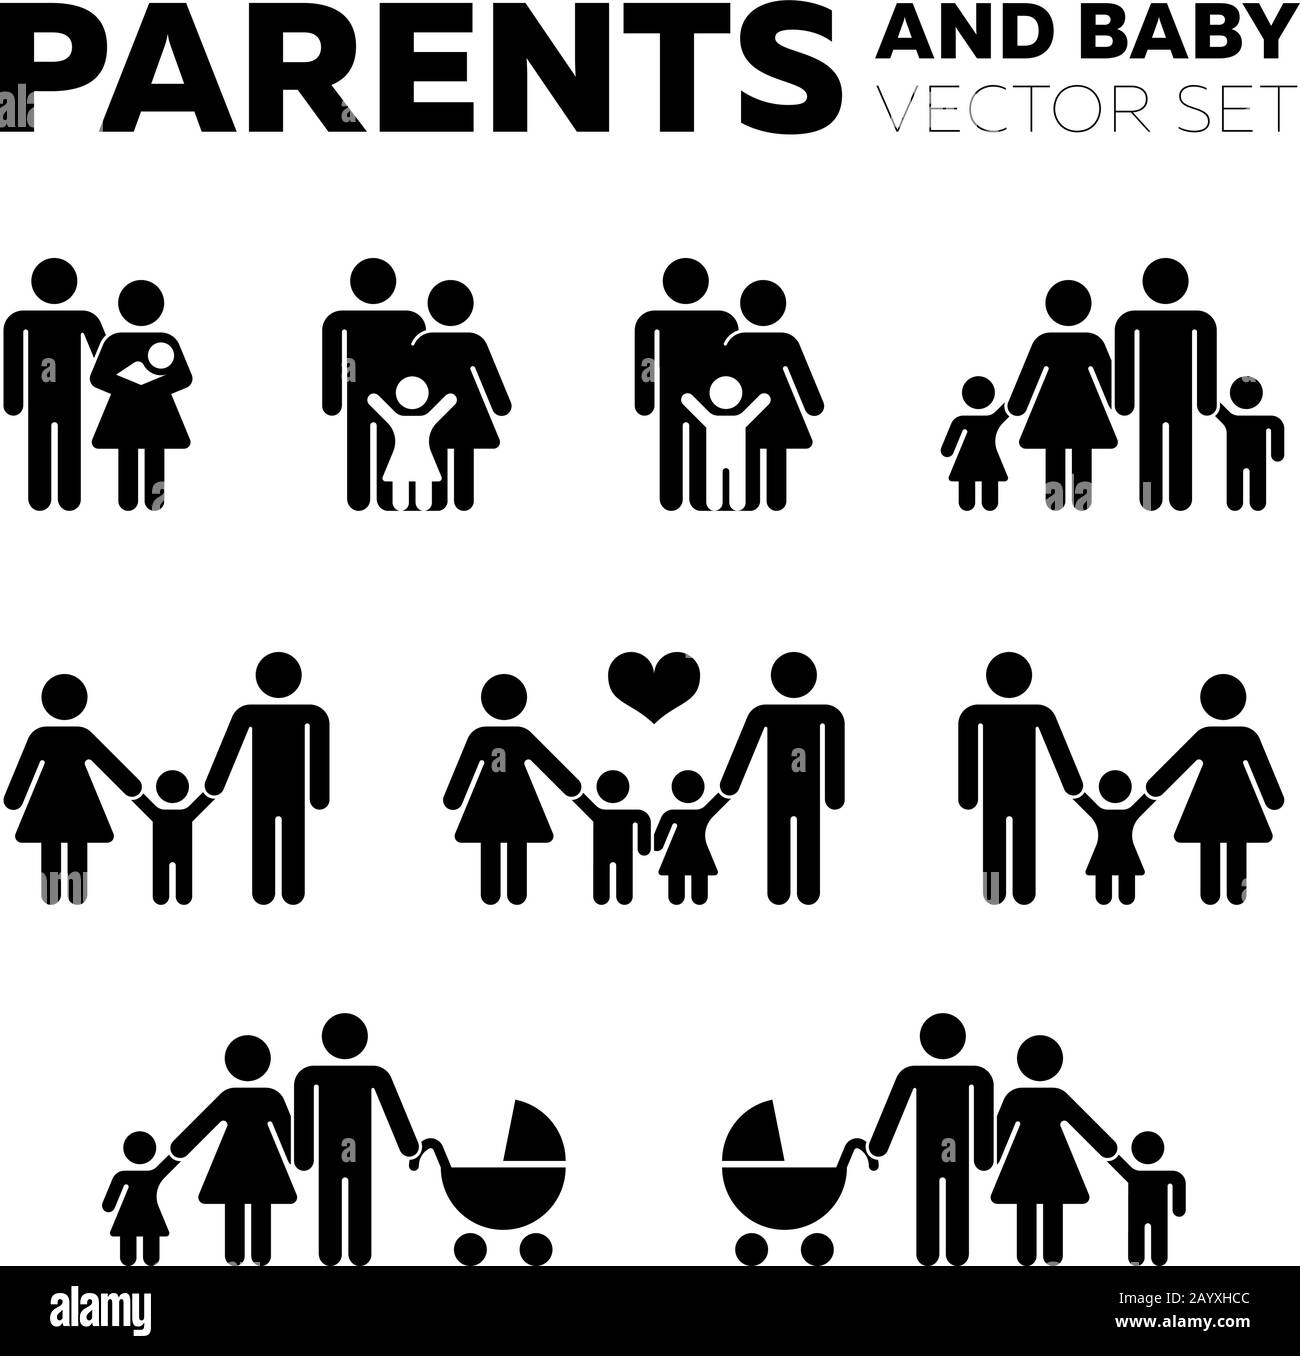 Eltern- und Babyvektor-Symbole. Junge Familie zusammen, Frau mit Kinderwagen, Abbildung glückliche Familien Stock Vektor